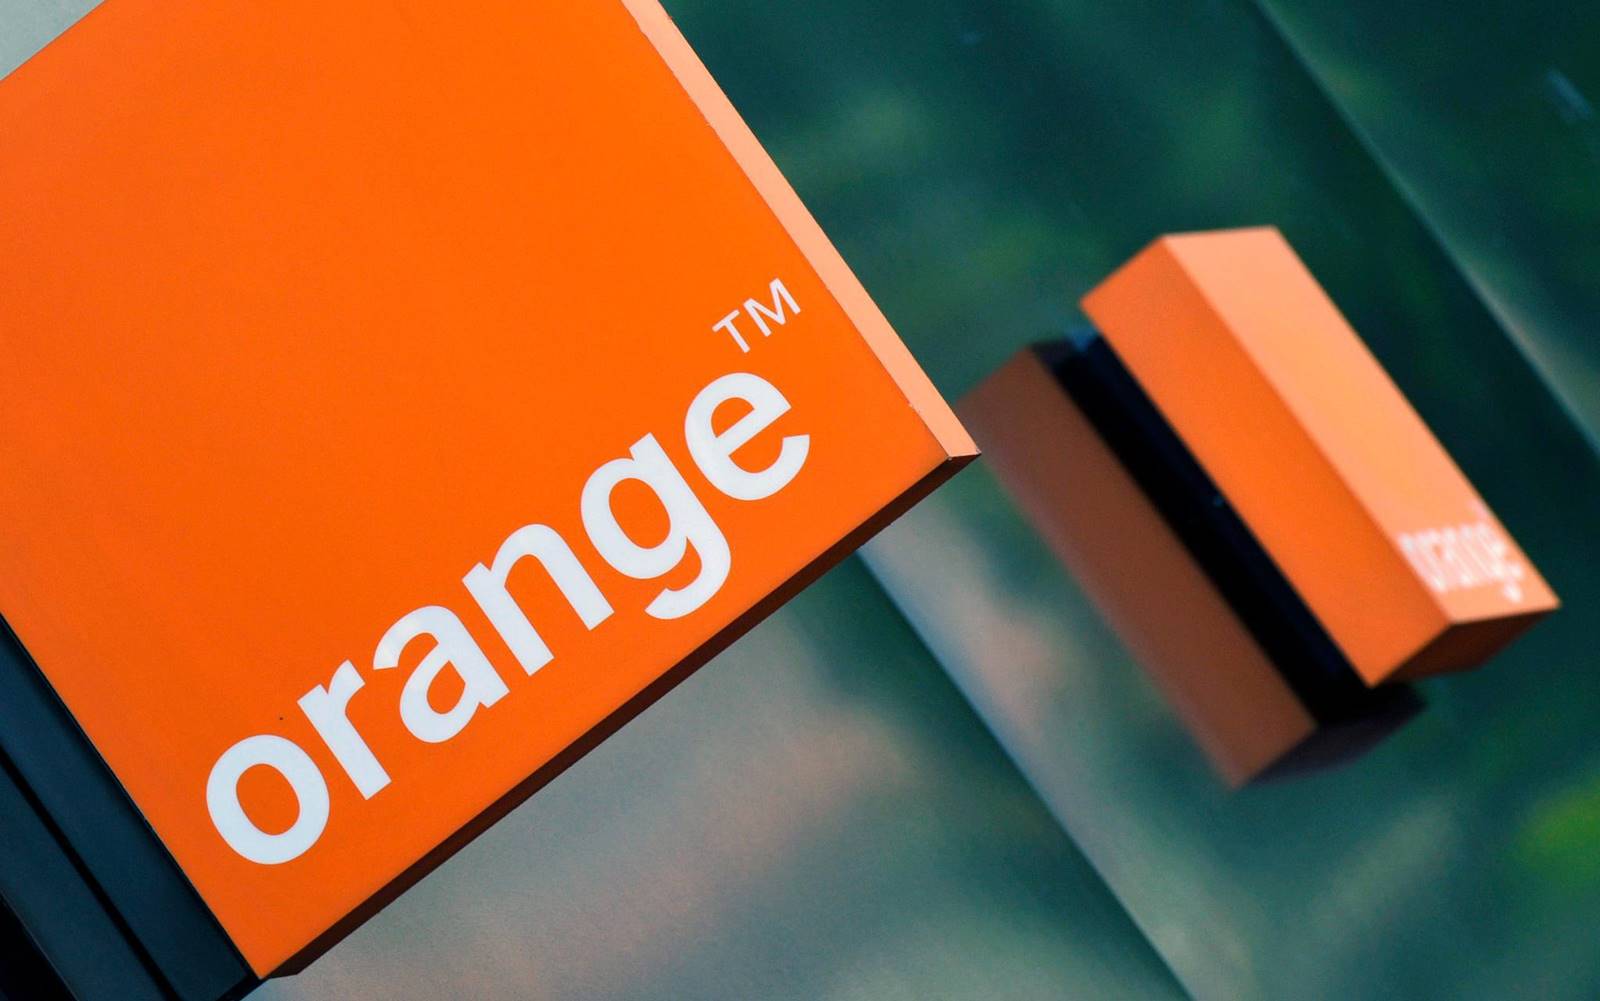 Orange Romania. Weekend cu Telefoanele Reduse Mult pe 17 August